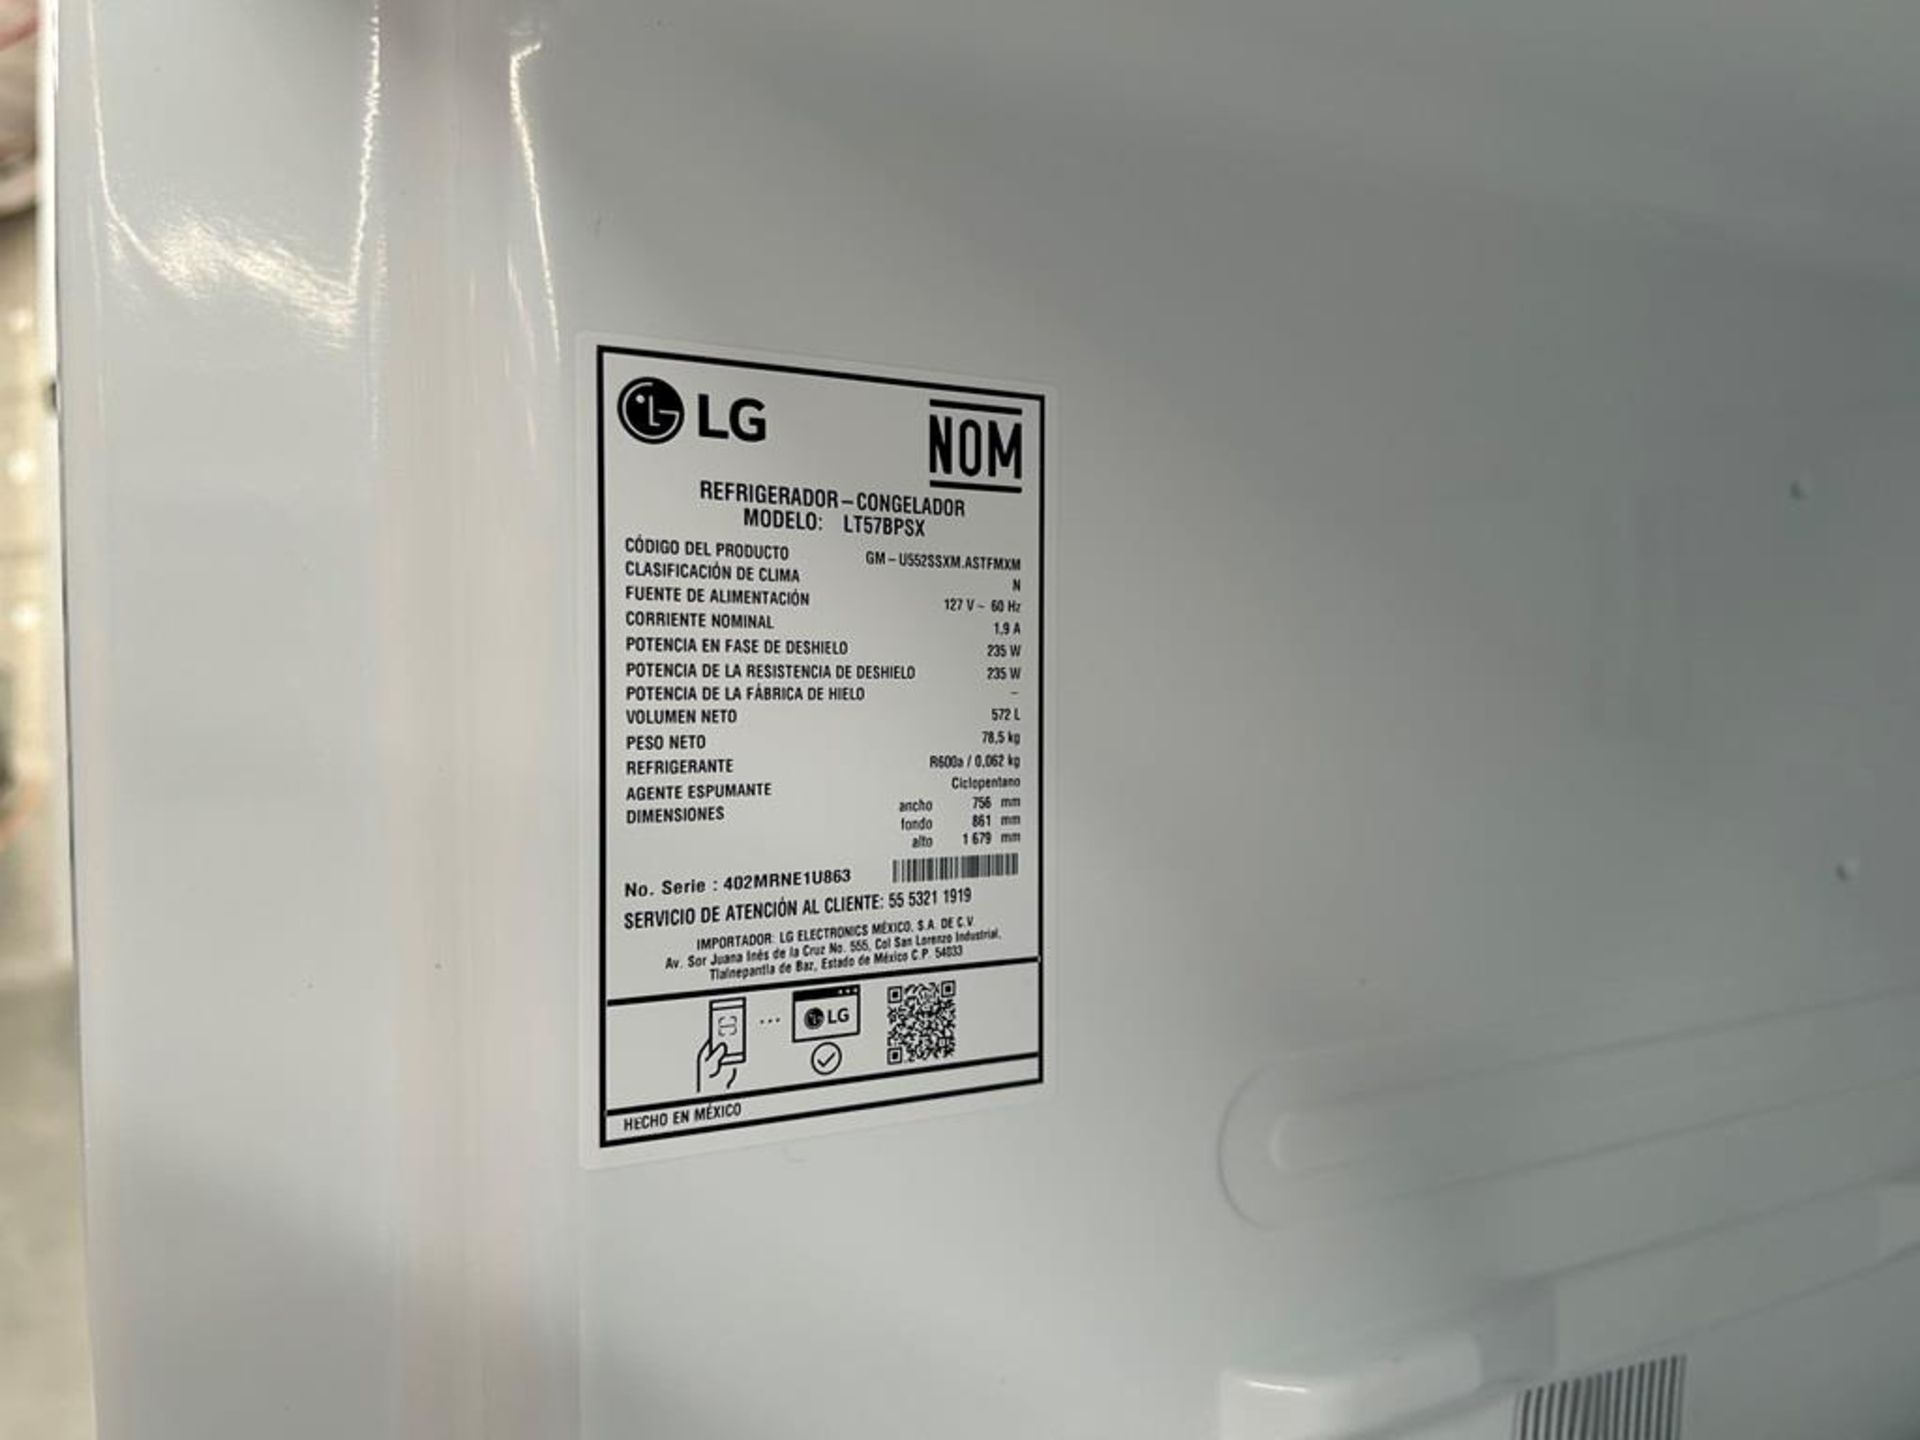 (NUEVO) Refrigerador Marca LG, Modelo LT57BPSX, Serie 1U863, Color GRIS - Image 9 of 11